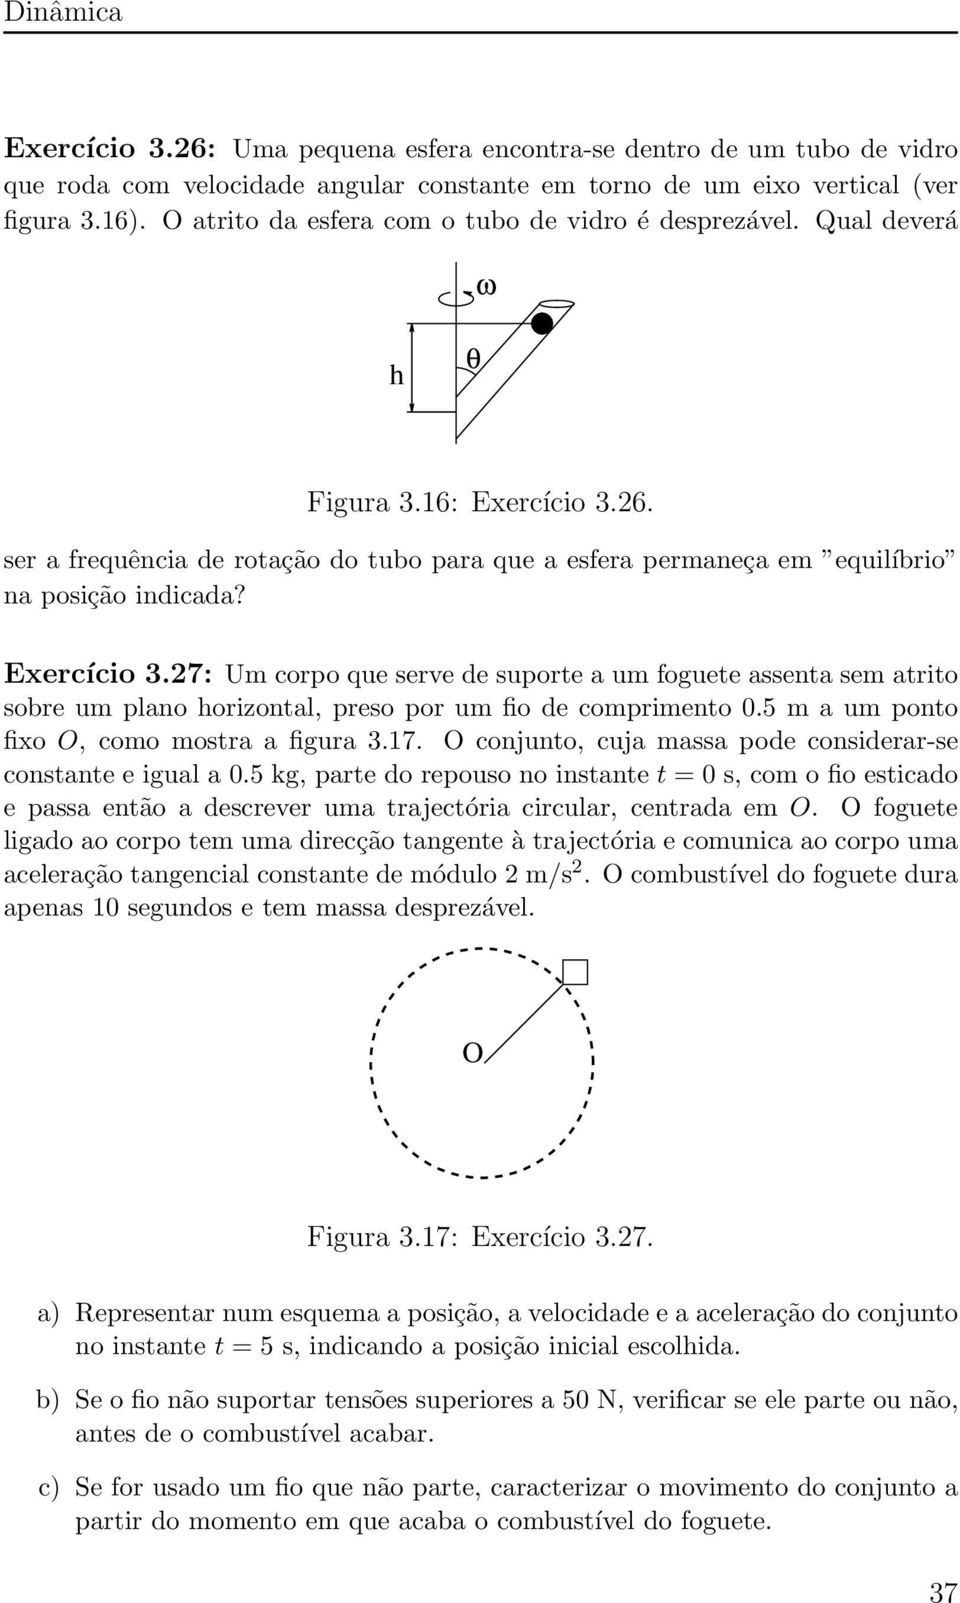 Exercício 3.27 : Um corpo que serve de suporte a um foguete assenta sem atrito sobre um plano horizontal, preso por um fio de comprimento 0.5 m a um ponto fixo O, como mostra a figura 3.17.